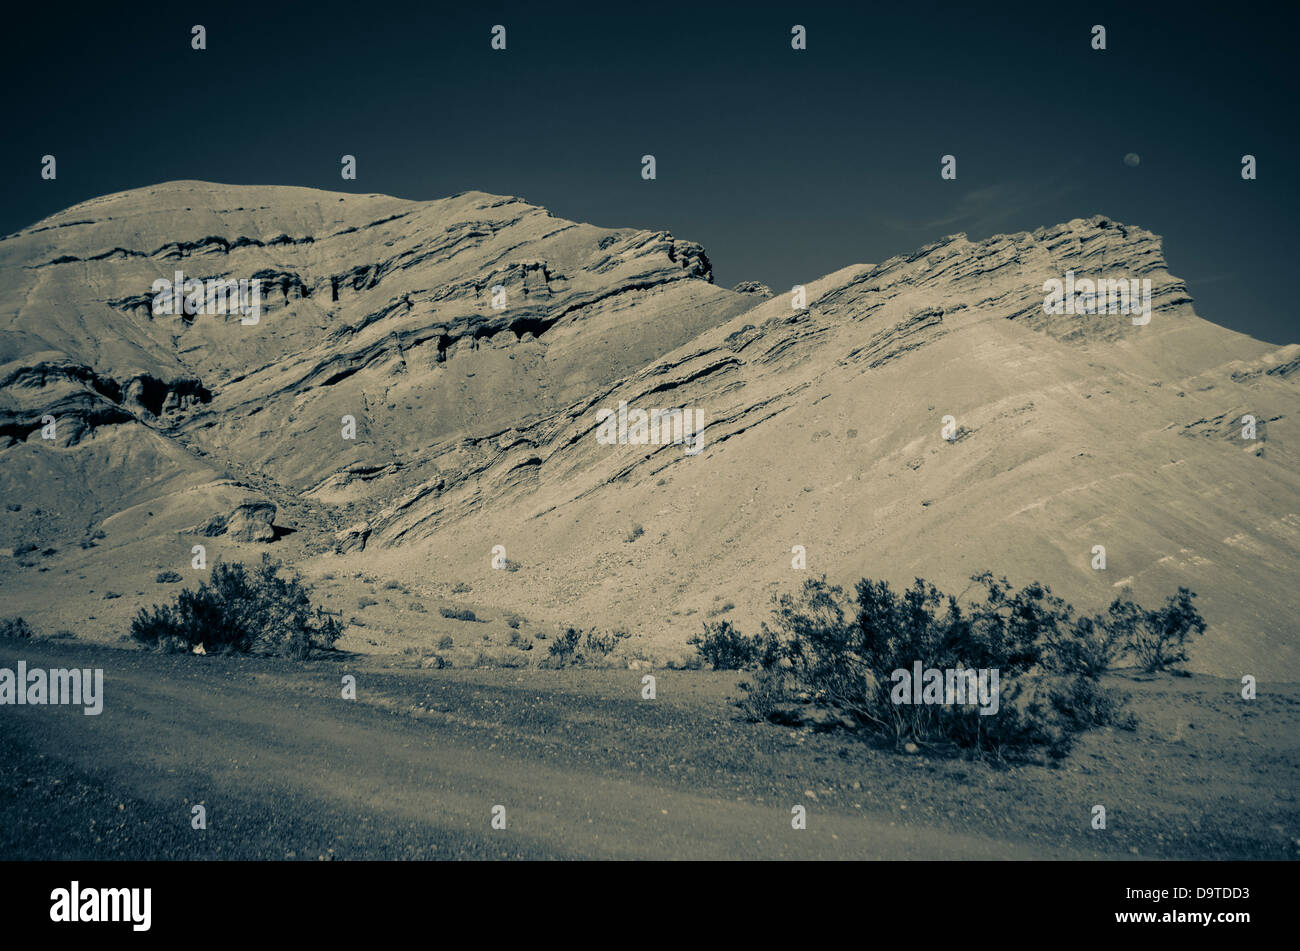 desert formation Stock Photo